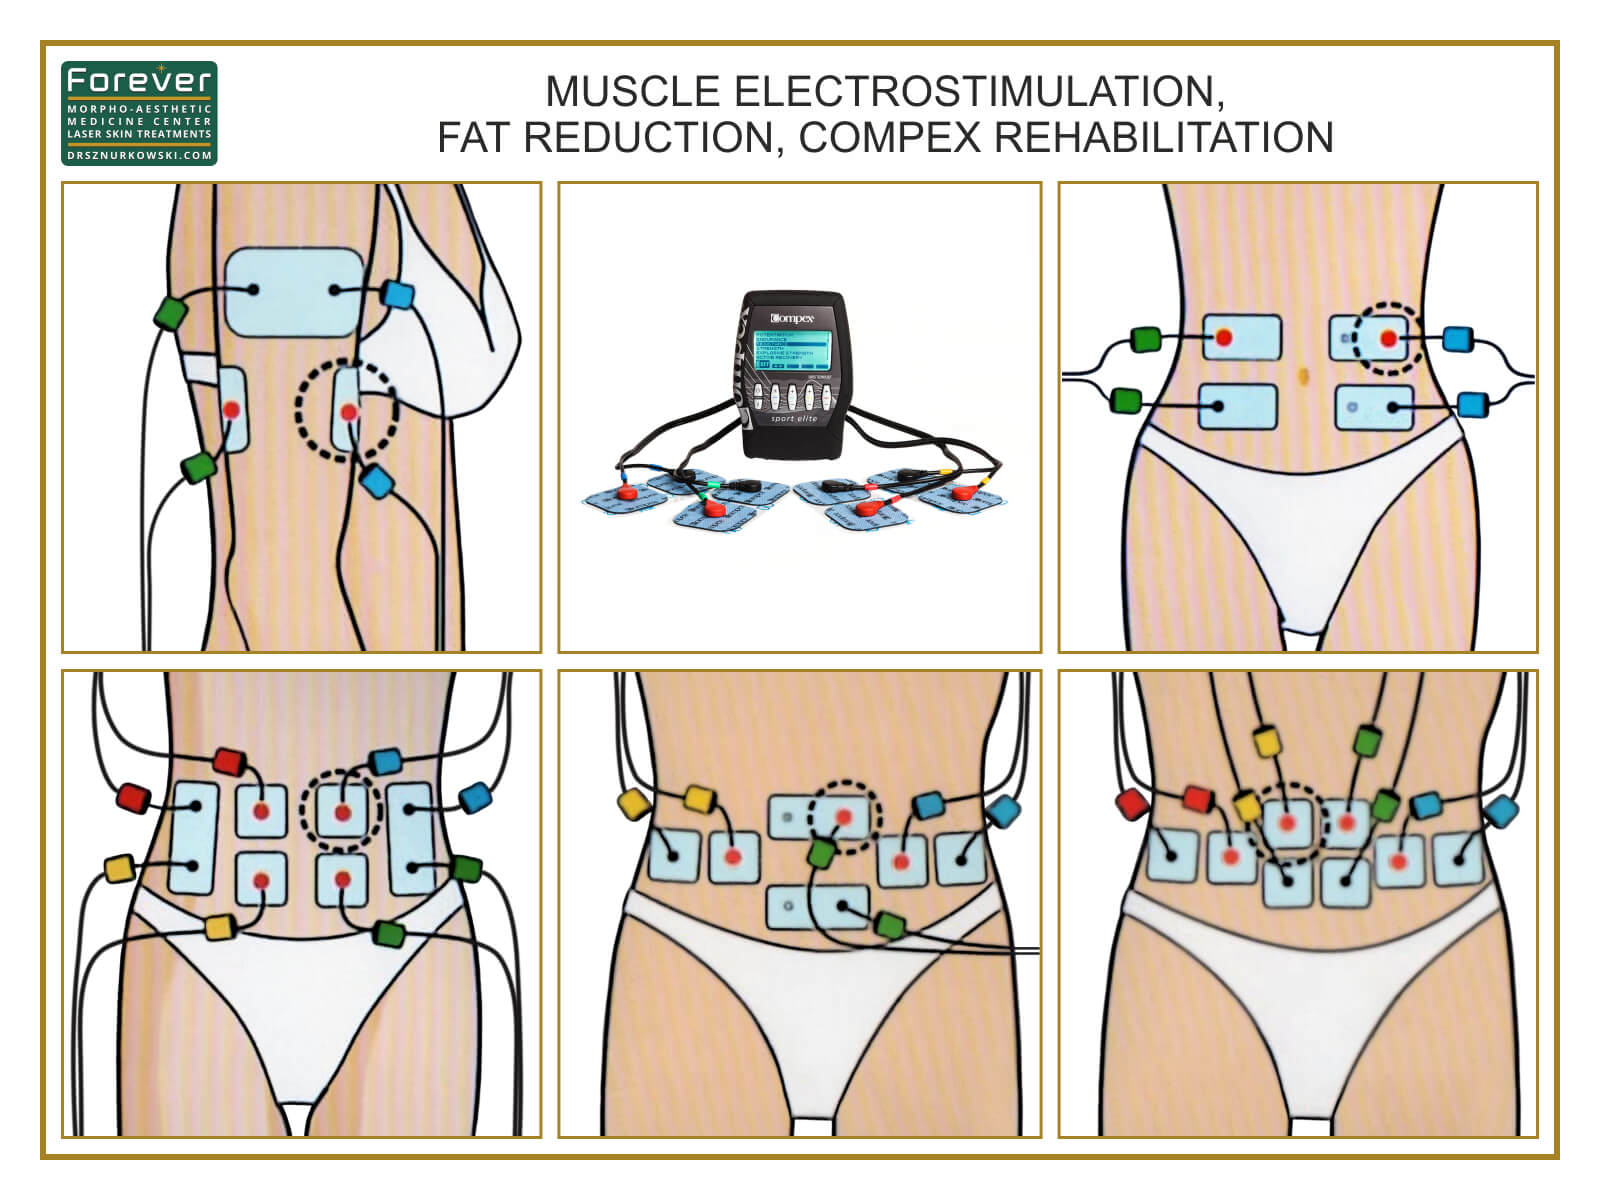 Muscle Electrostimulation, Fat Reduction, Compex Rehabilitation (80x60) EN.jpg